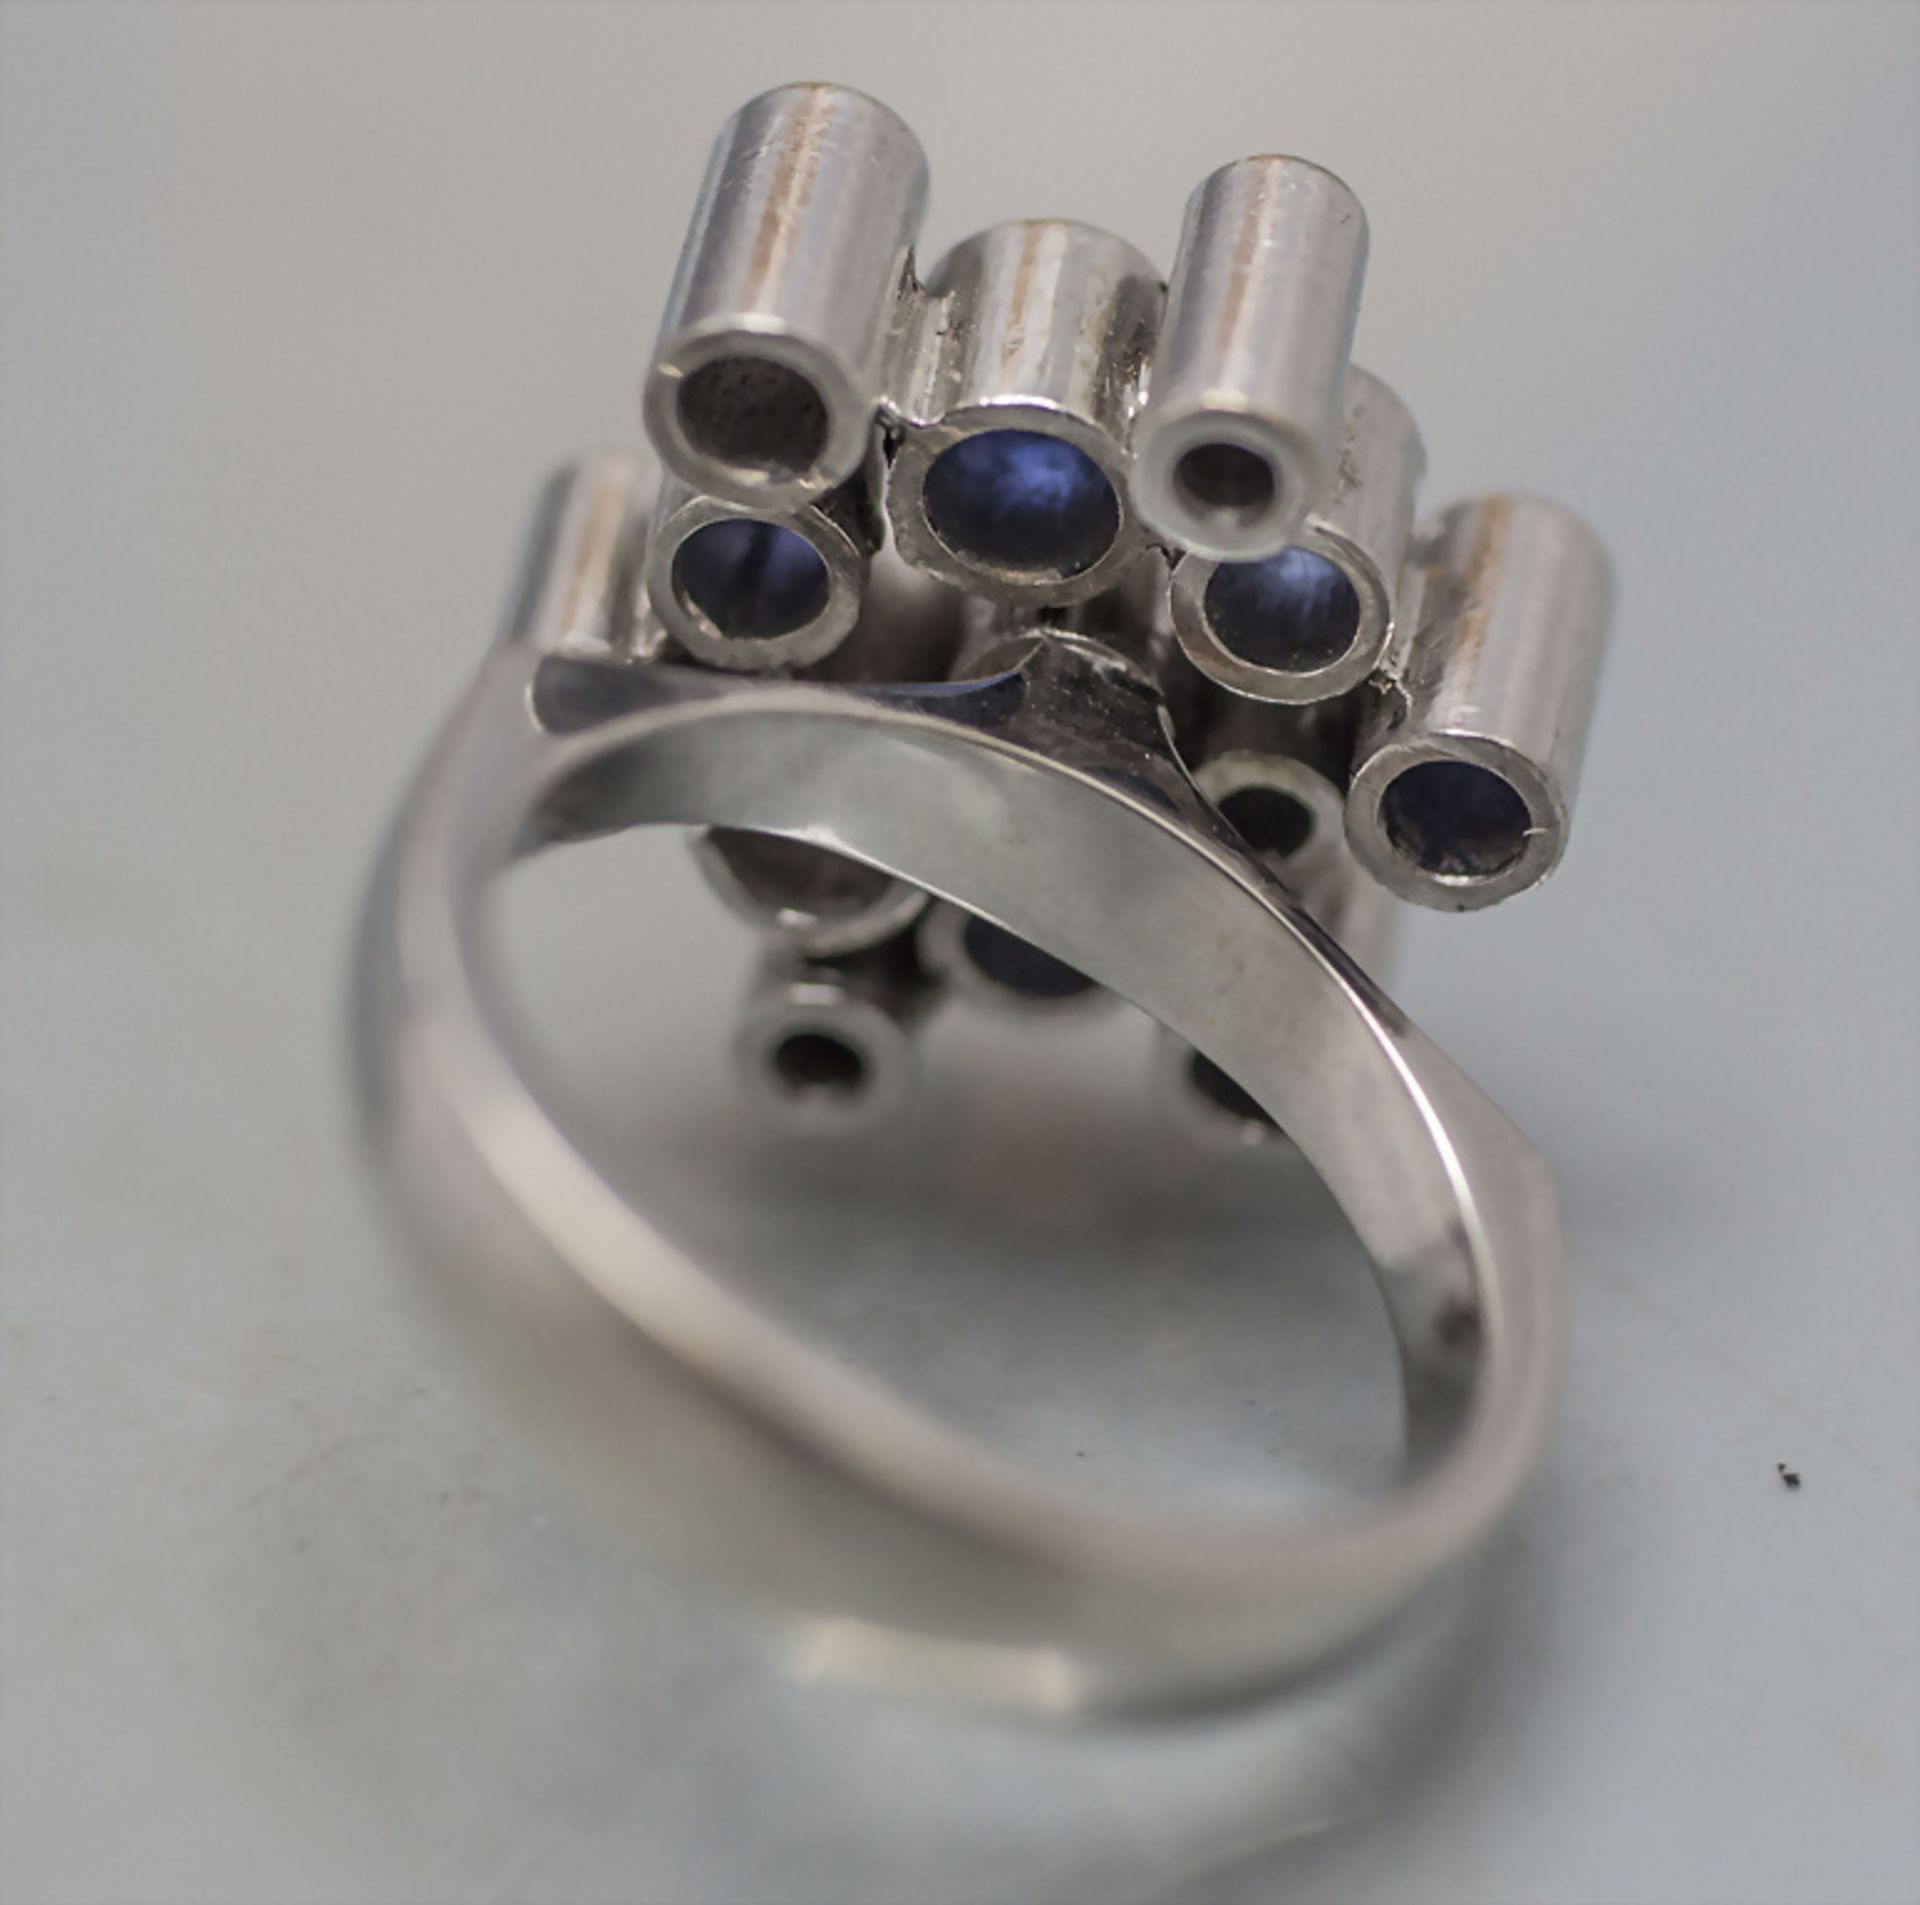 Damenring mit Saphiren und Brillanten / A ladies 18 ct white gold ring with sapphires and diamonds - Bild 4 aus 4